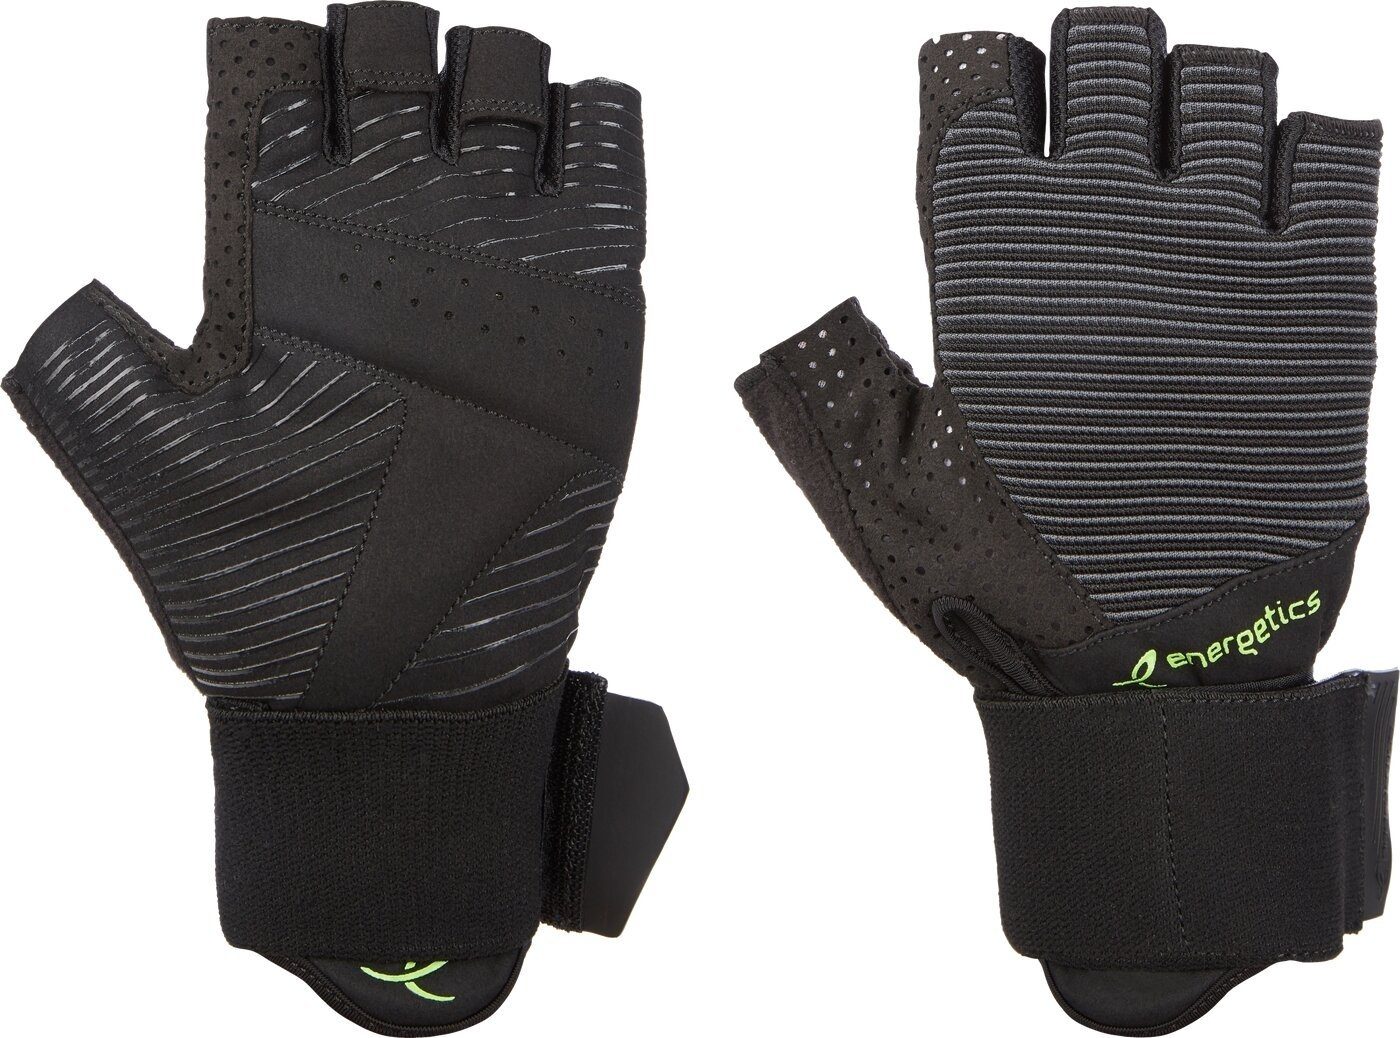 BLACK/YELLOW MFG550 Handschuh Trainingshandschuhe Energetics